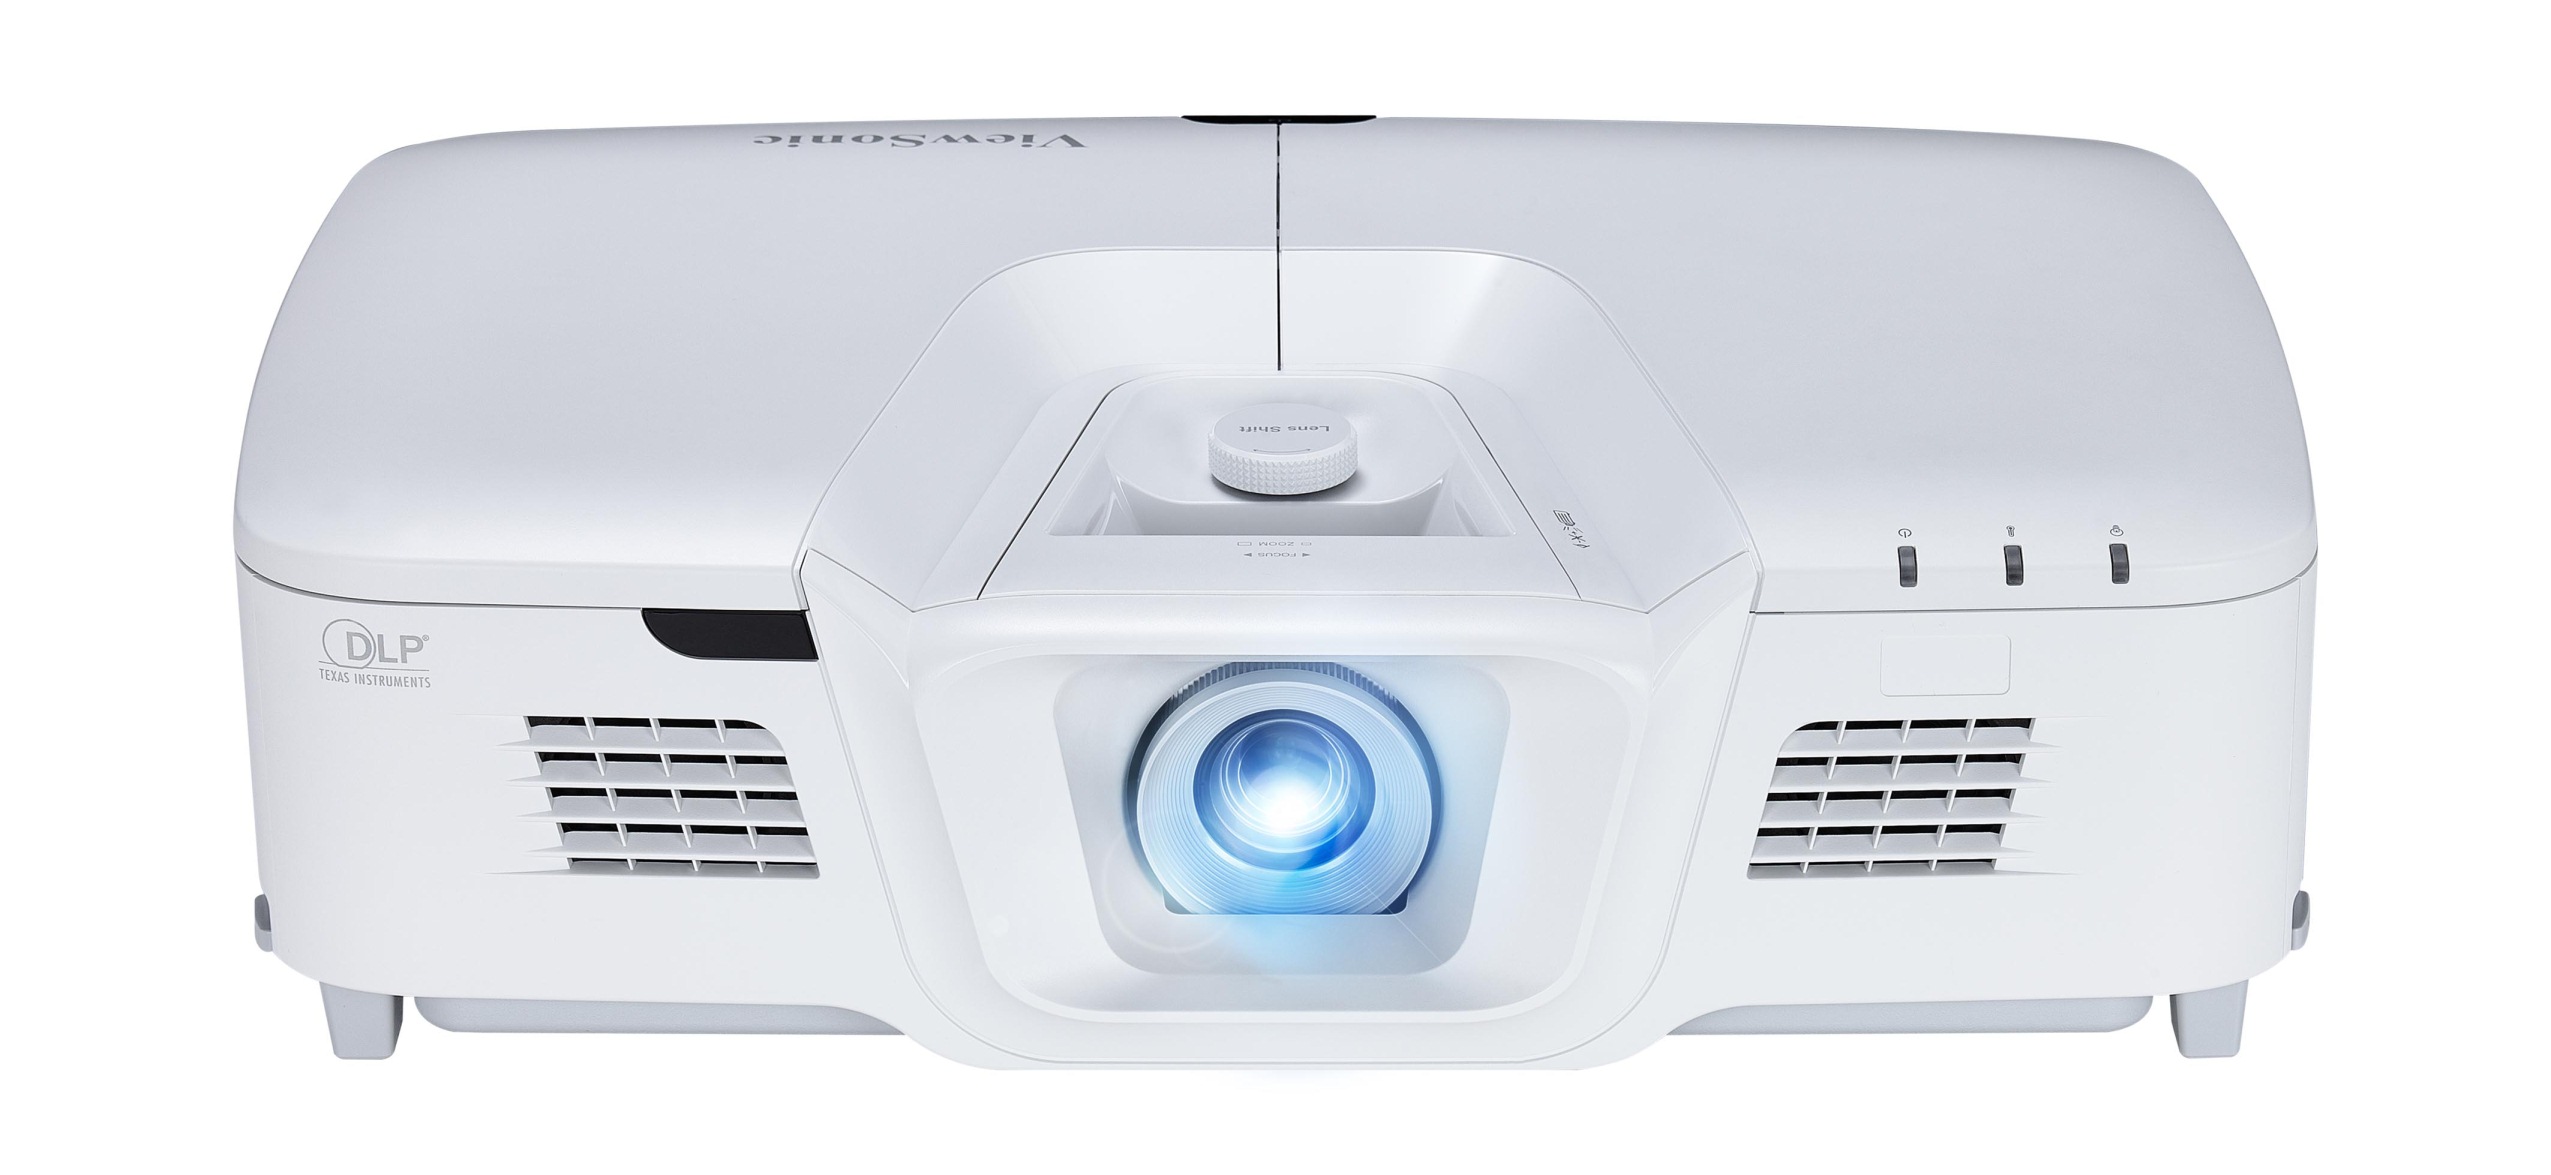 ViewSonic выпустила новый проектор PG800HD